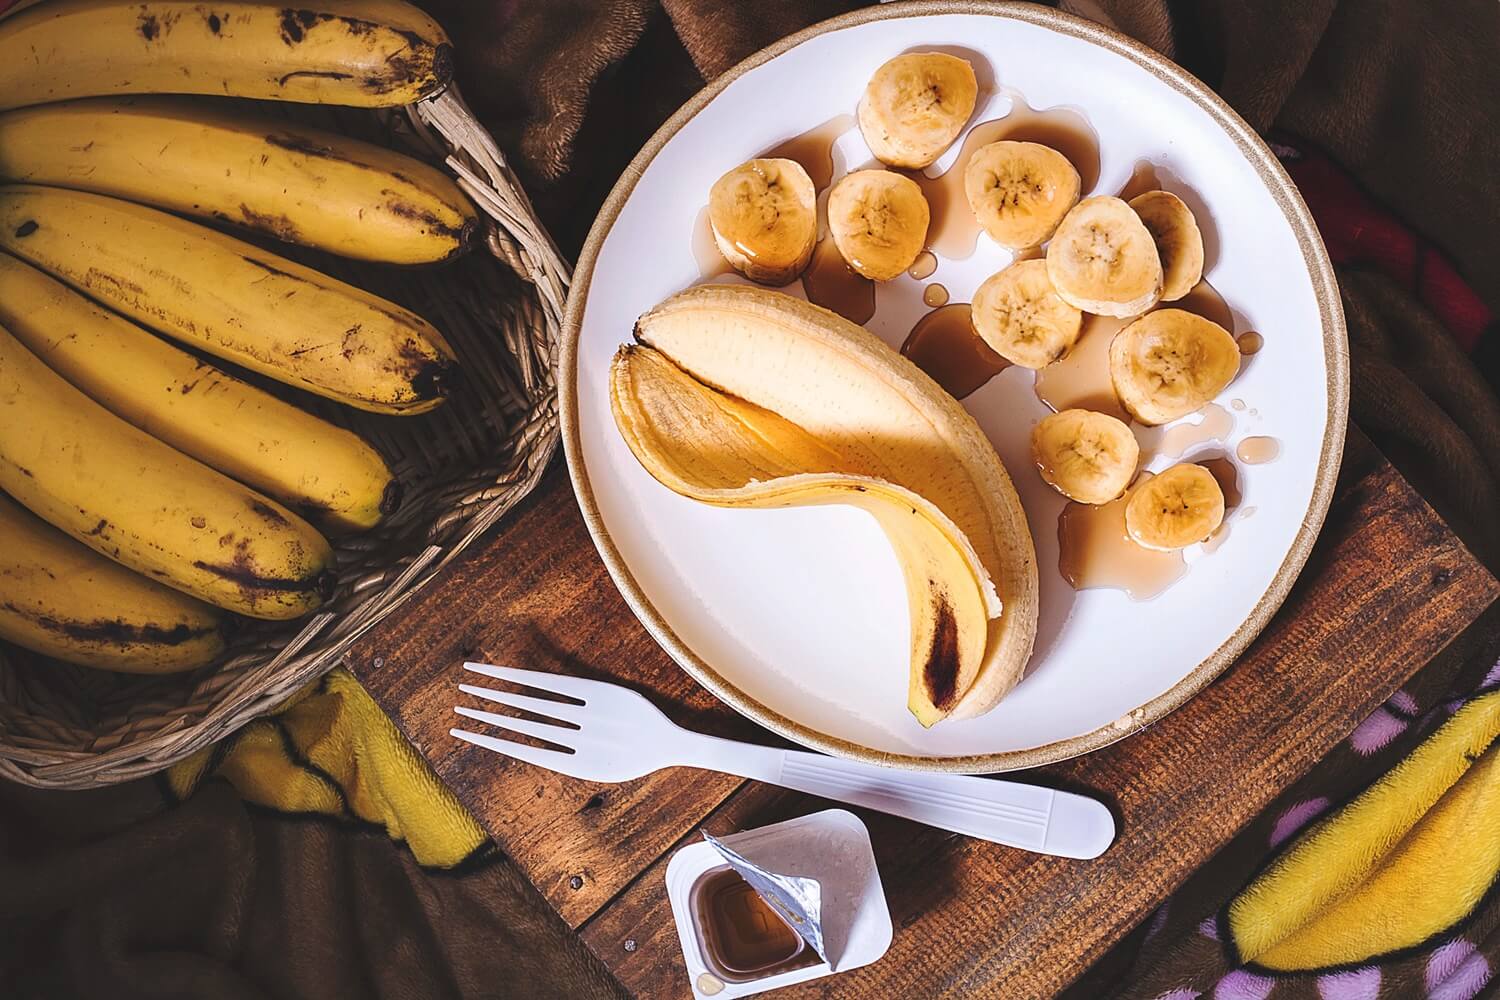 Mit csináljunk a barna banánnal?